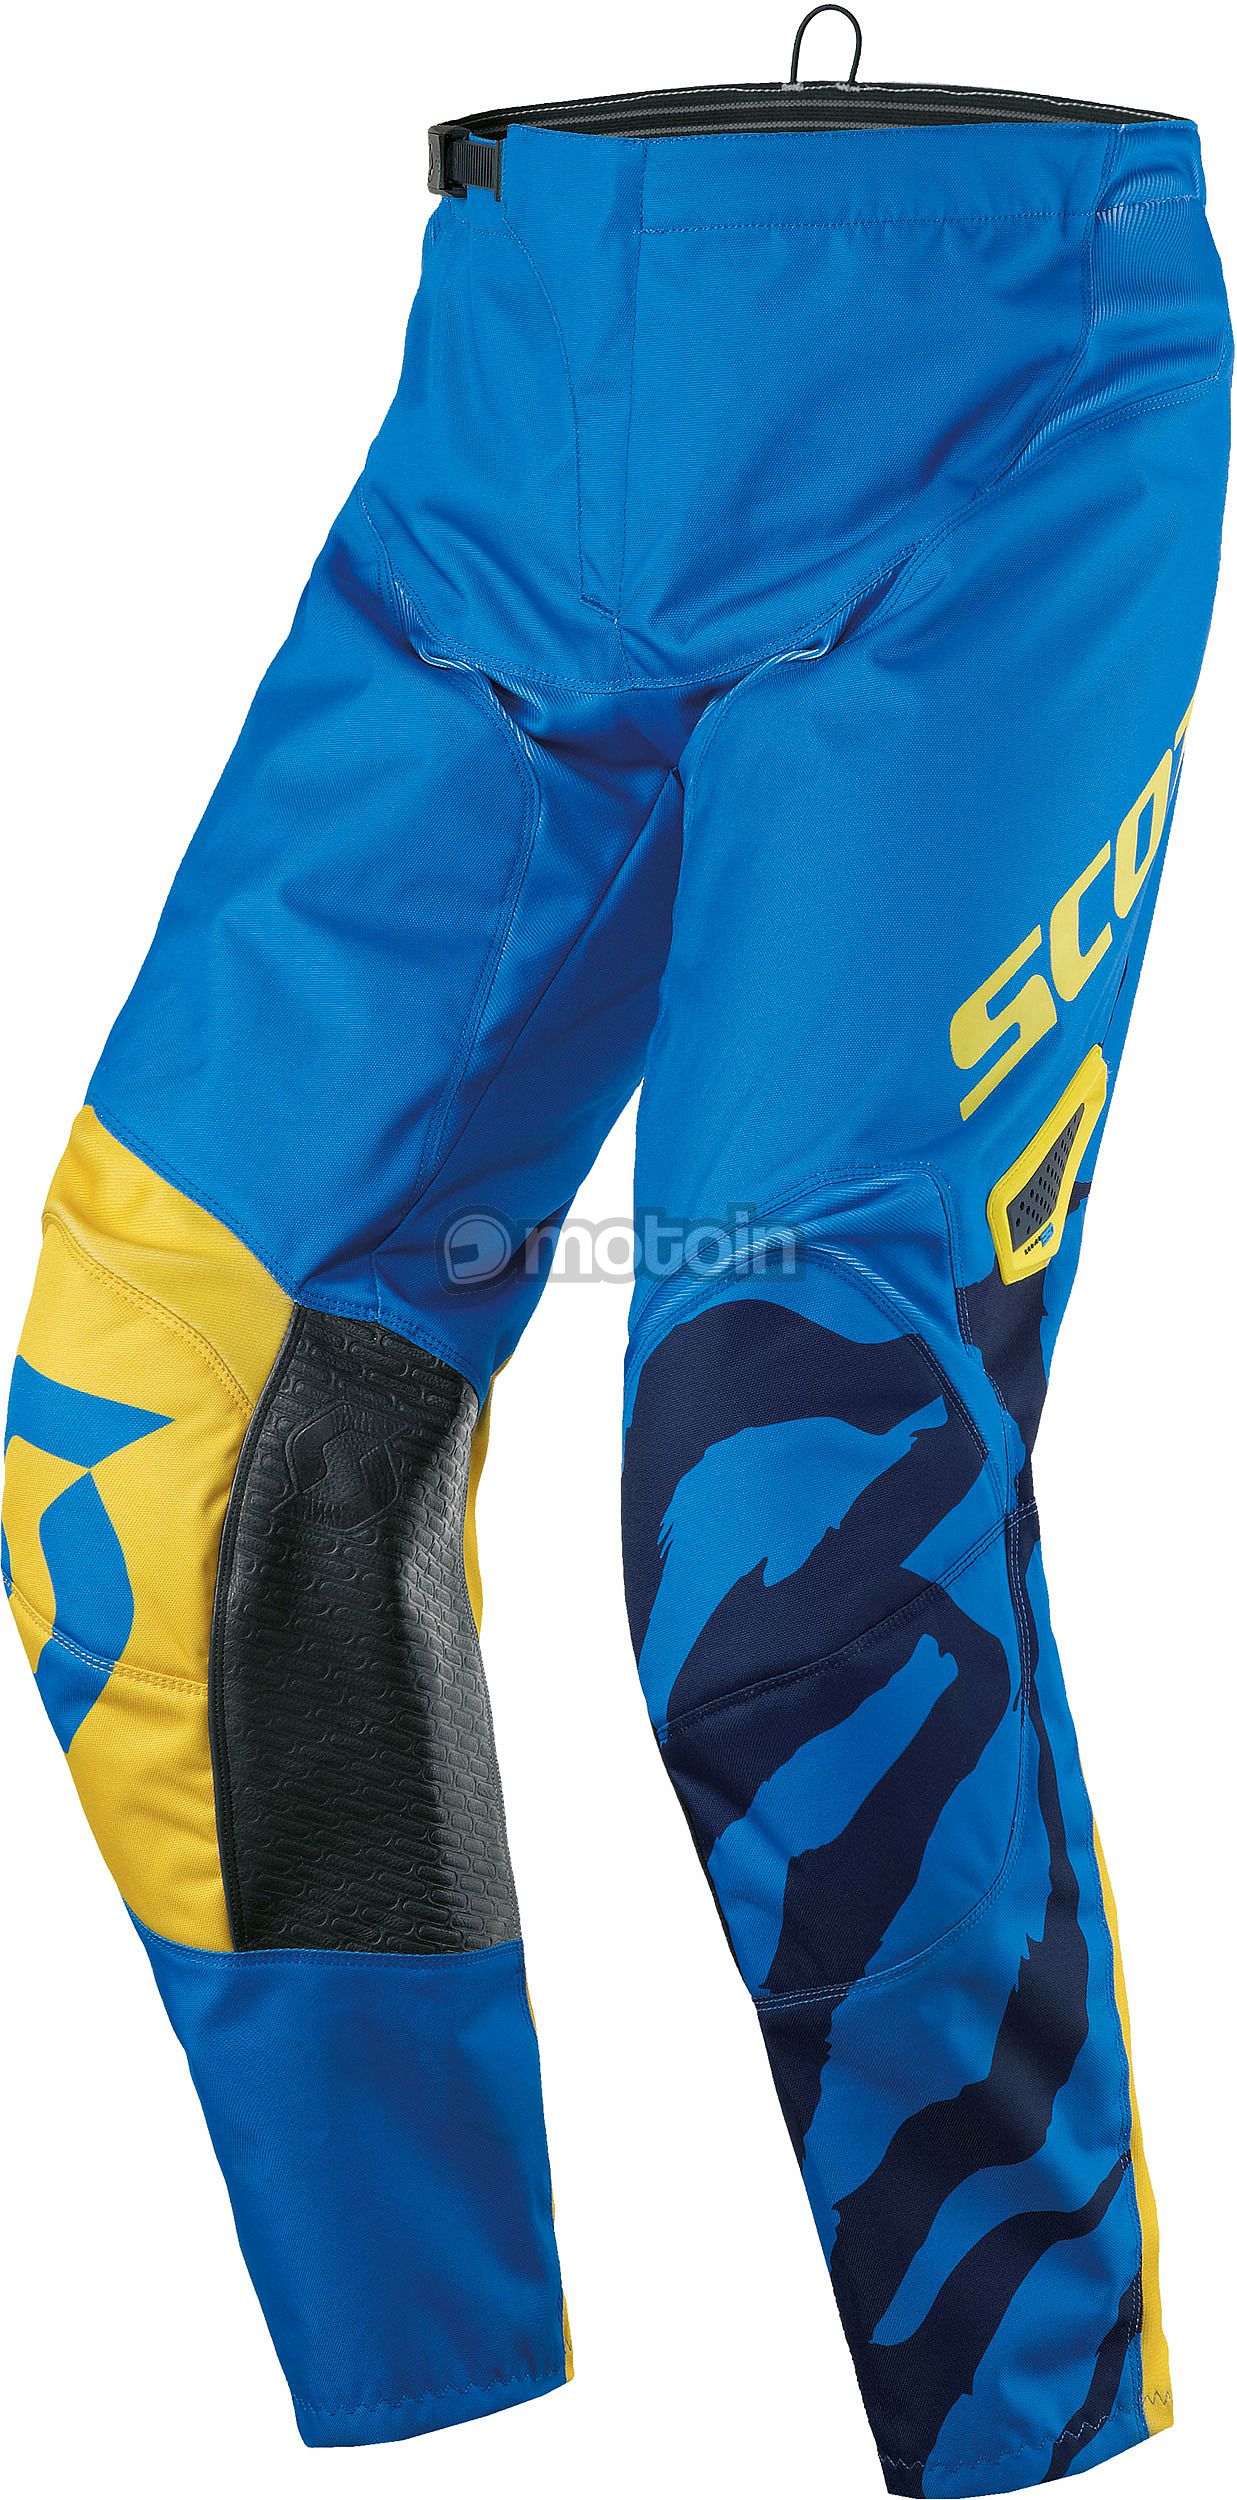 Scott 350 Race, tekstil bukser børn